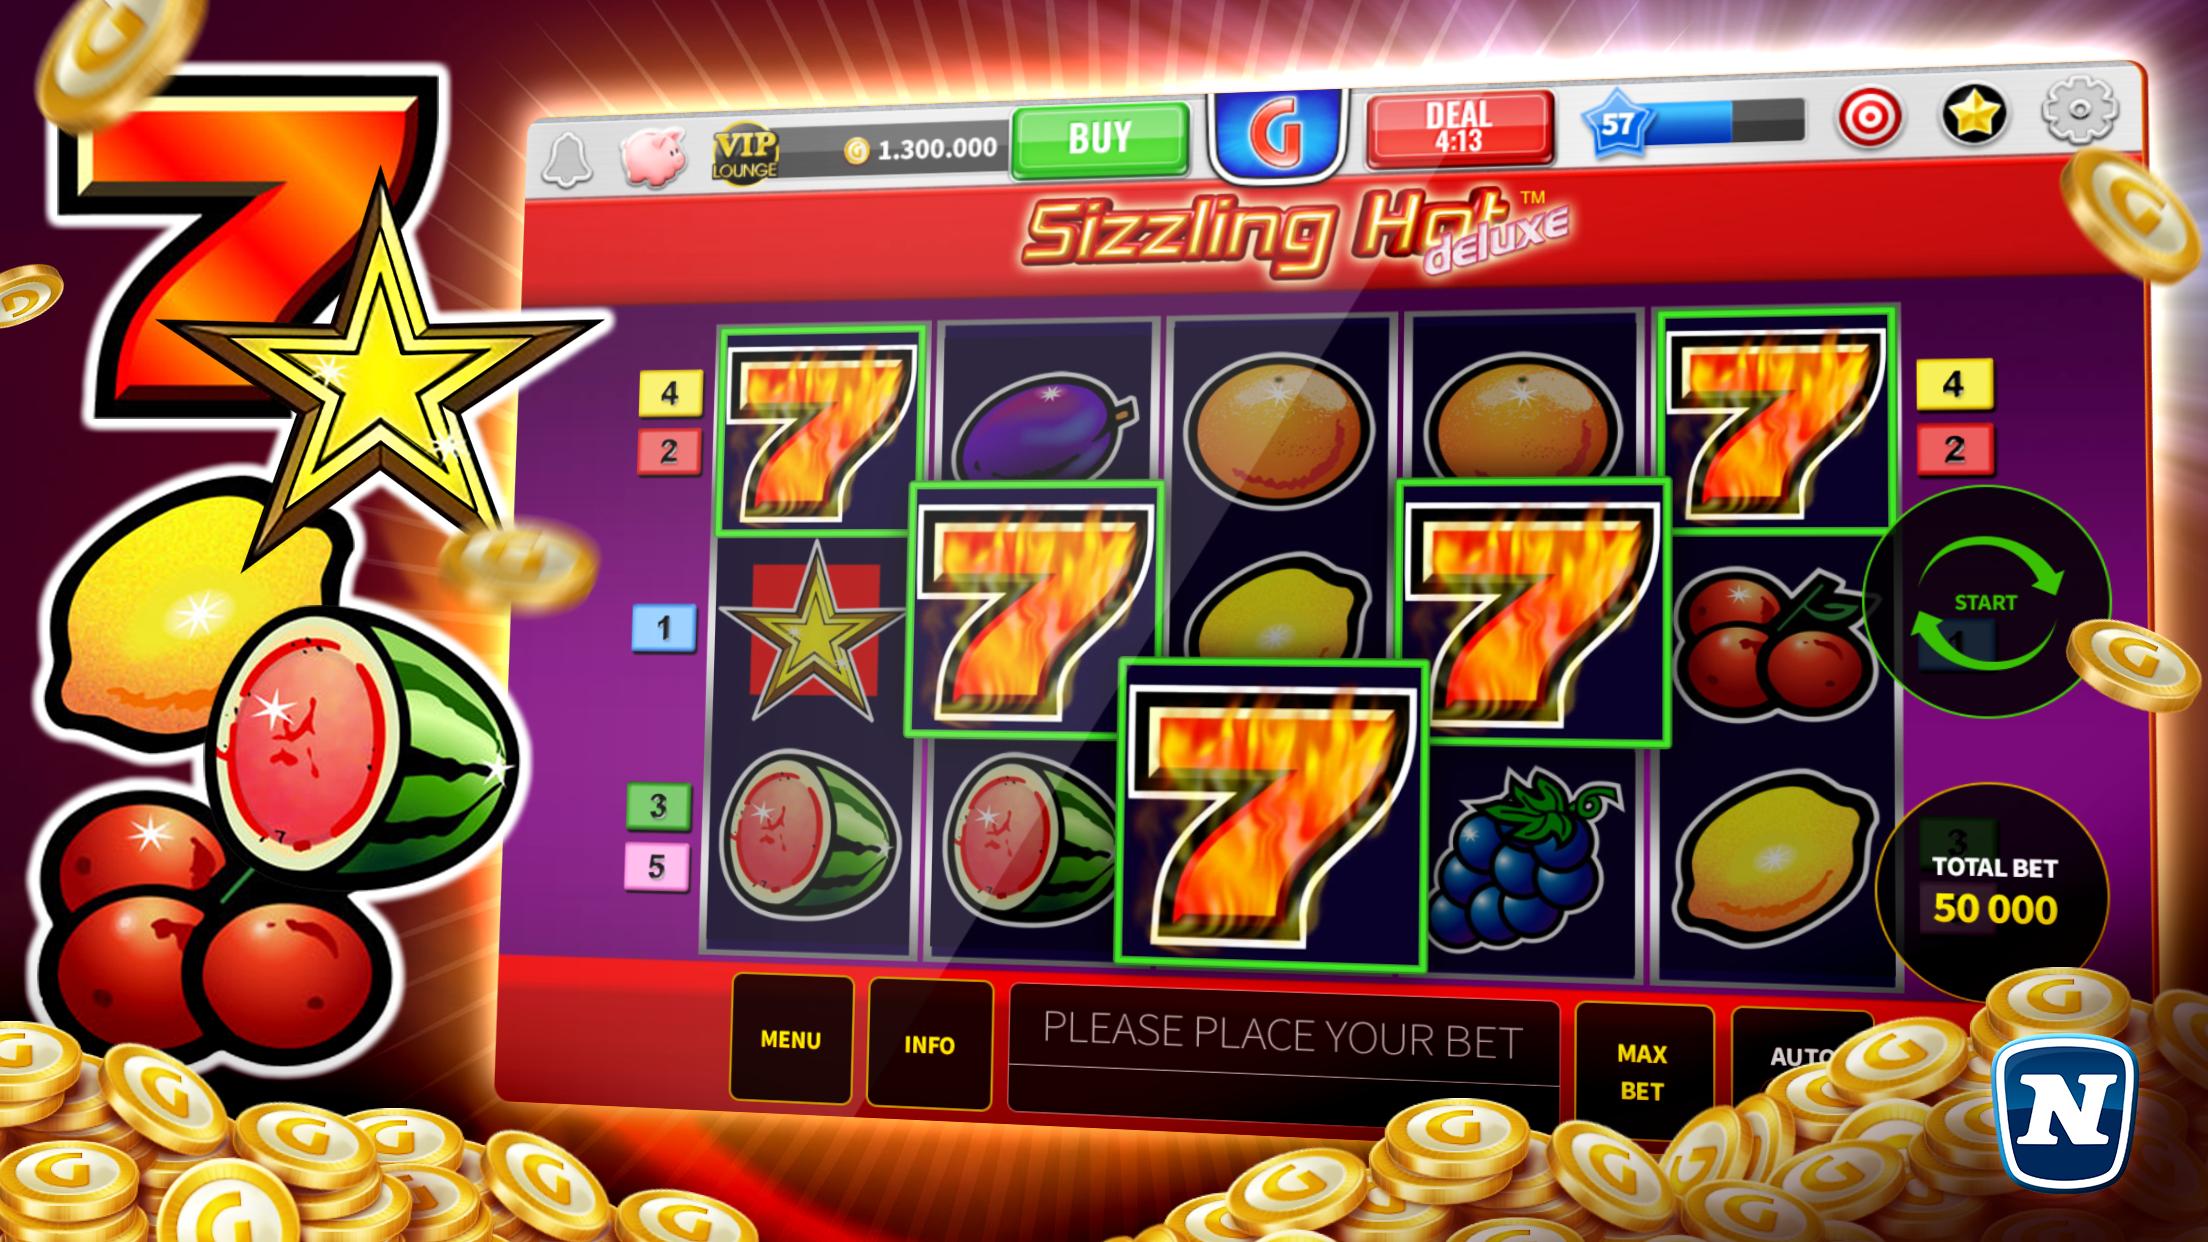 Скачать бесплатно игровые автоматы на компьютер gaminator казино автоматы игровые